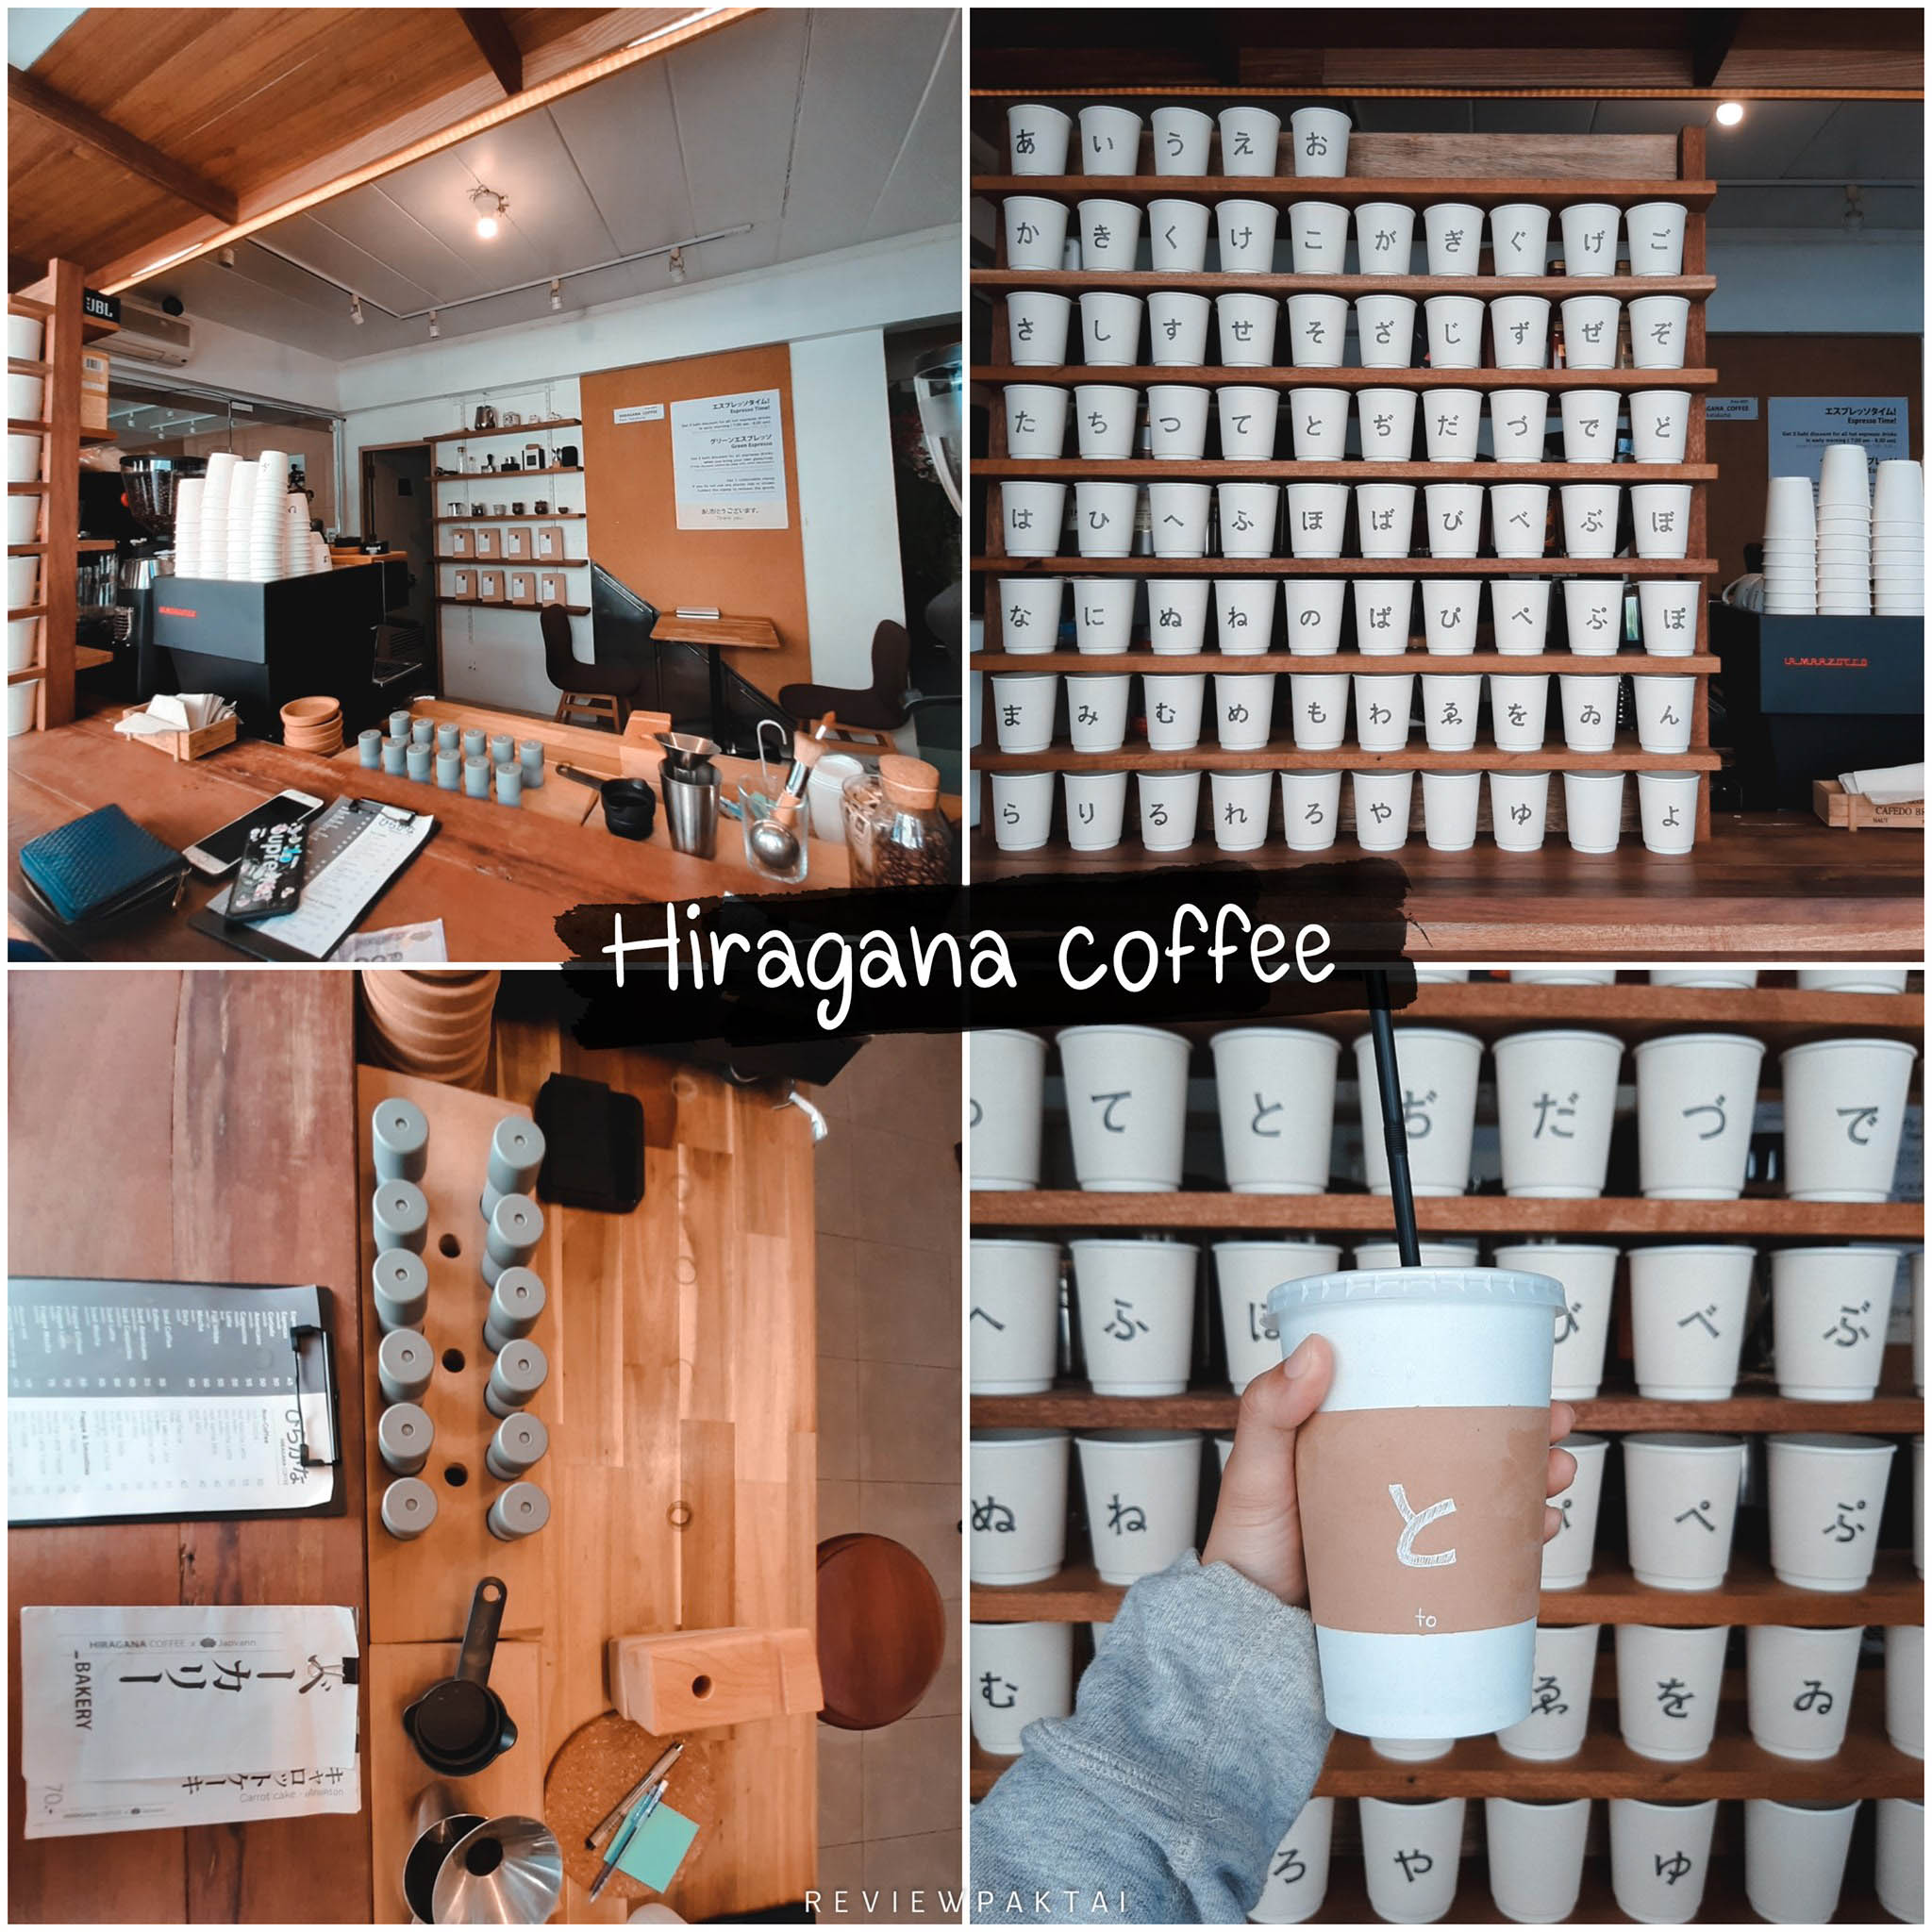 Hiragana-coffee คาเฟ่ภูเก็ต-ร้านน่ารัก-สไตล์ญี่ปุ่นมากๆ-ถึงจะเล็กแต่ก็ไม่ธรรมดามาถ่ายรูปสวยๆเช็คอินหลายมุมกันได้เลย
ร้านแต่งได้น่ารักสไตล์ญี่ปุ่นมากๆ-แก้วเป็นรูปอักษรภาษาญี่ปุ่น-ถึงจะเล็กแต่ก็ไม่ธรรมดา-ถ่ายรูปสวยๆได้หลายมุม-เมนูของร้านก็มีทั้งเครื่องดื่มและเค้ก-ต้องบอกว่ารสชาติกับราคาไปด้วยกันได้อย่างดี-ที่ร้านมีเมล็ดกาแฟให้เลือกเป็นแบบคั่วกลางหรือคั่วเข้ม-ลาเต้ร้อนฟองนมนุ่ม-เครื่องดื่มราคาไม่แพงค่ะ-ถึงร้านละได้กลิ่นอายความเป็นญี่ปุ่นมาเลย-ตกแต่งร้านน่ารักมินิมอลสุดๆ-ทางร้านมีที่นั่งค่อนข้างน้อยนะคะ-เหมาะแก่การแวะซื้อทานบ้านค่ะ-หรืออาจจะแค่มาแชะรูปสักสองสามรูปสวยๆเช็คอิินปักหมุนแล้วกลับกันก็ได้เลยค่า-
 ภูเก็ต,คาเฟ่,ที่เที่ยว,ร้านกาแฟ,เด็ด,อร่อย,ต้องลอง